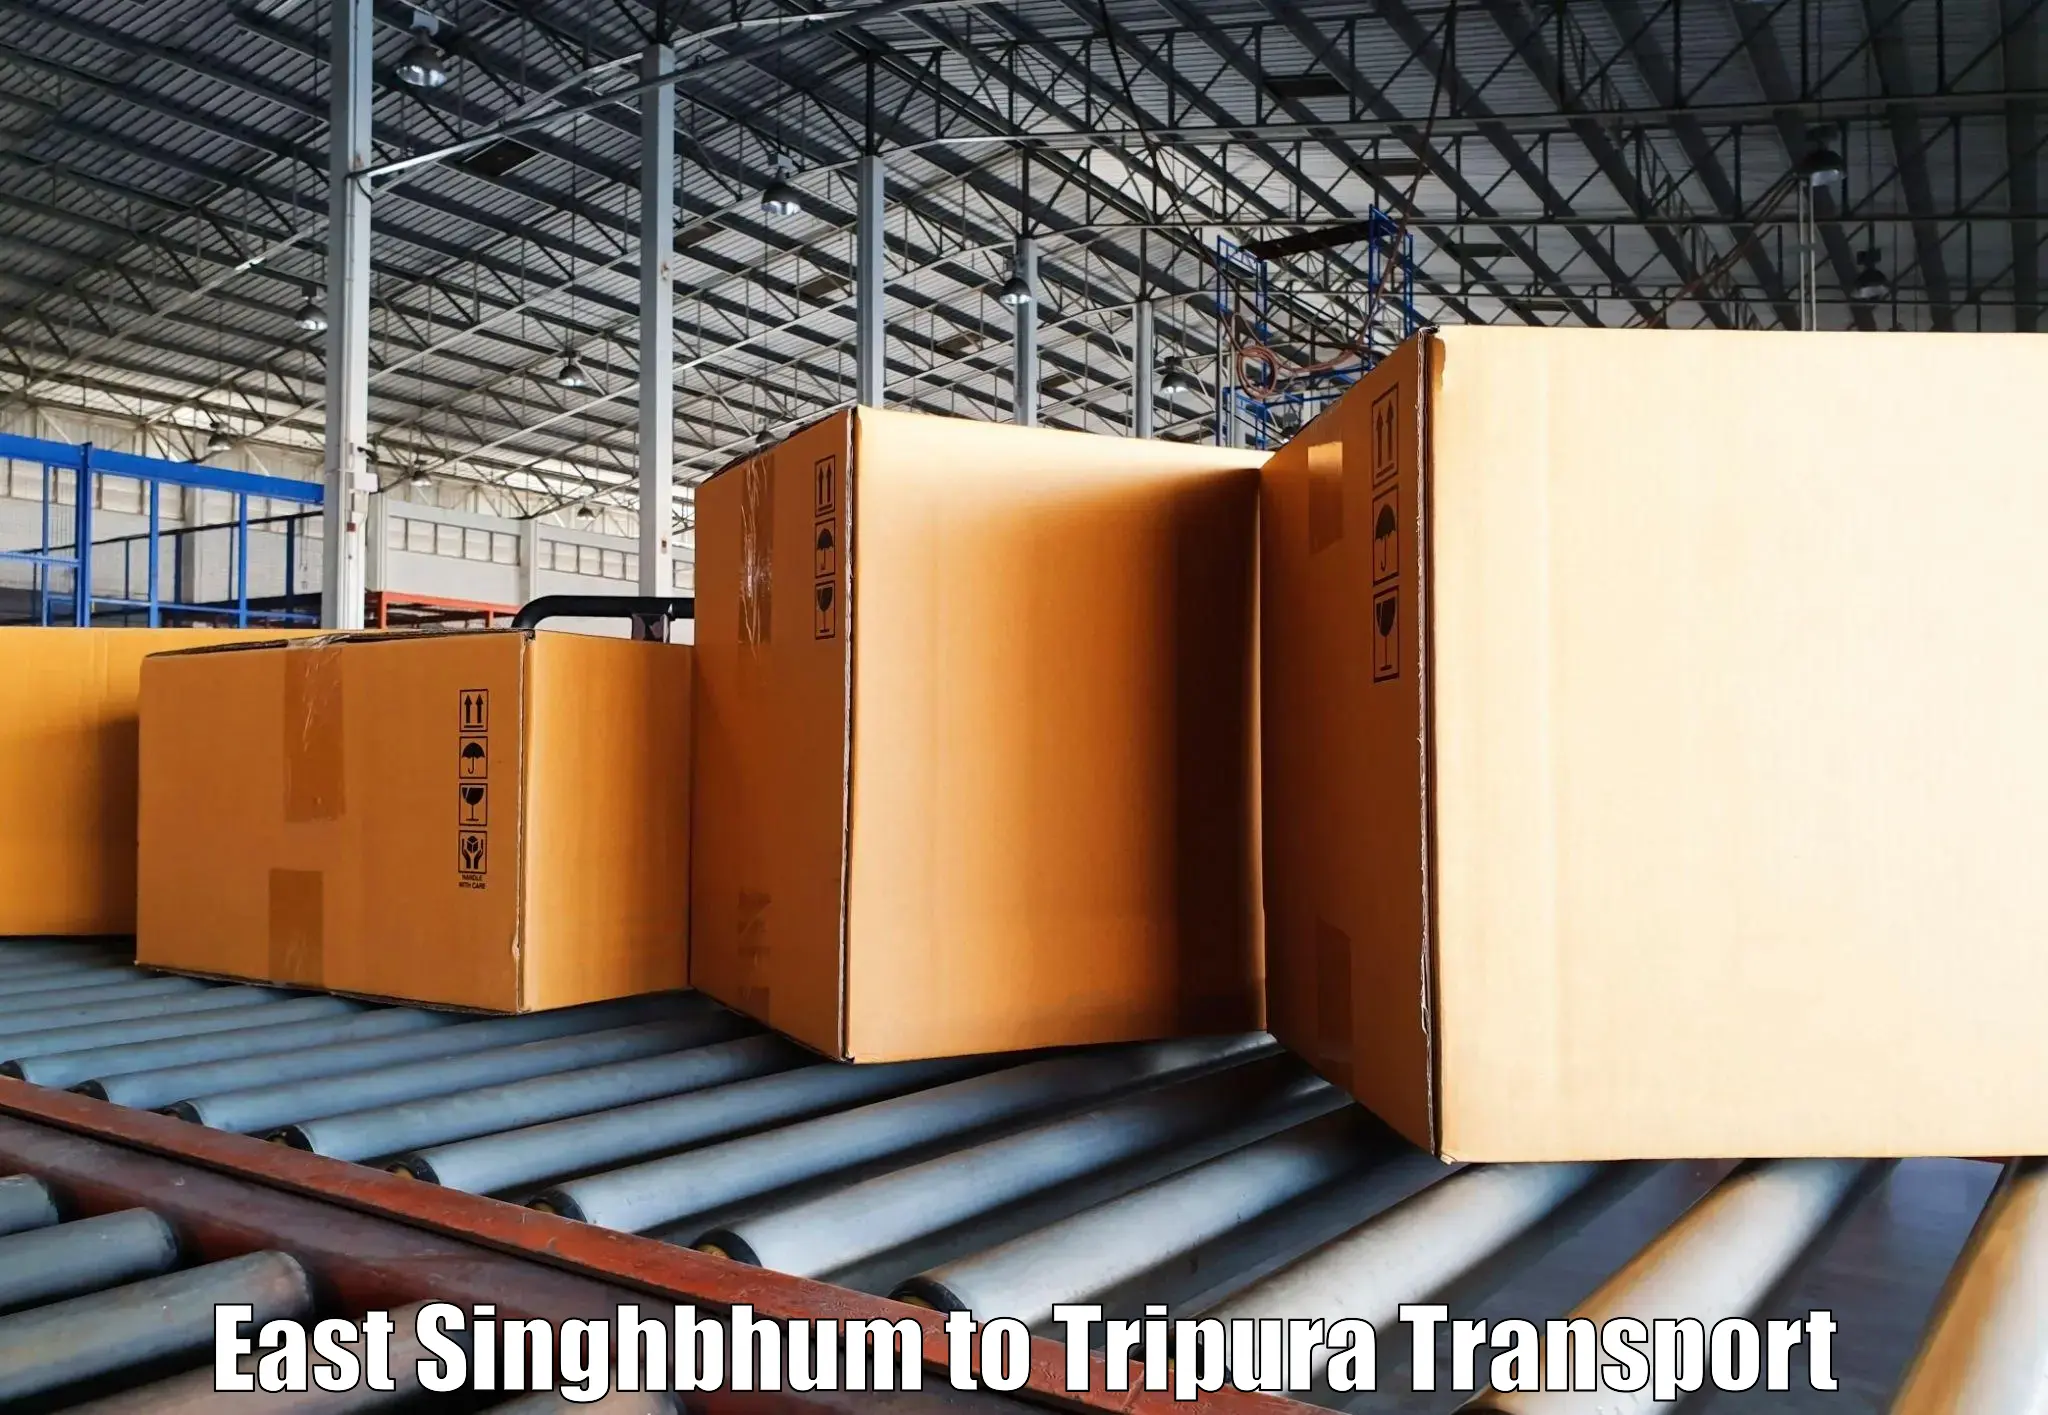 Furniture transport service East Singhbhum to Kamalpur